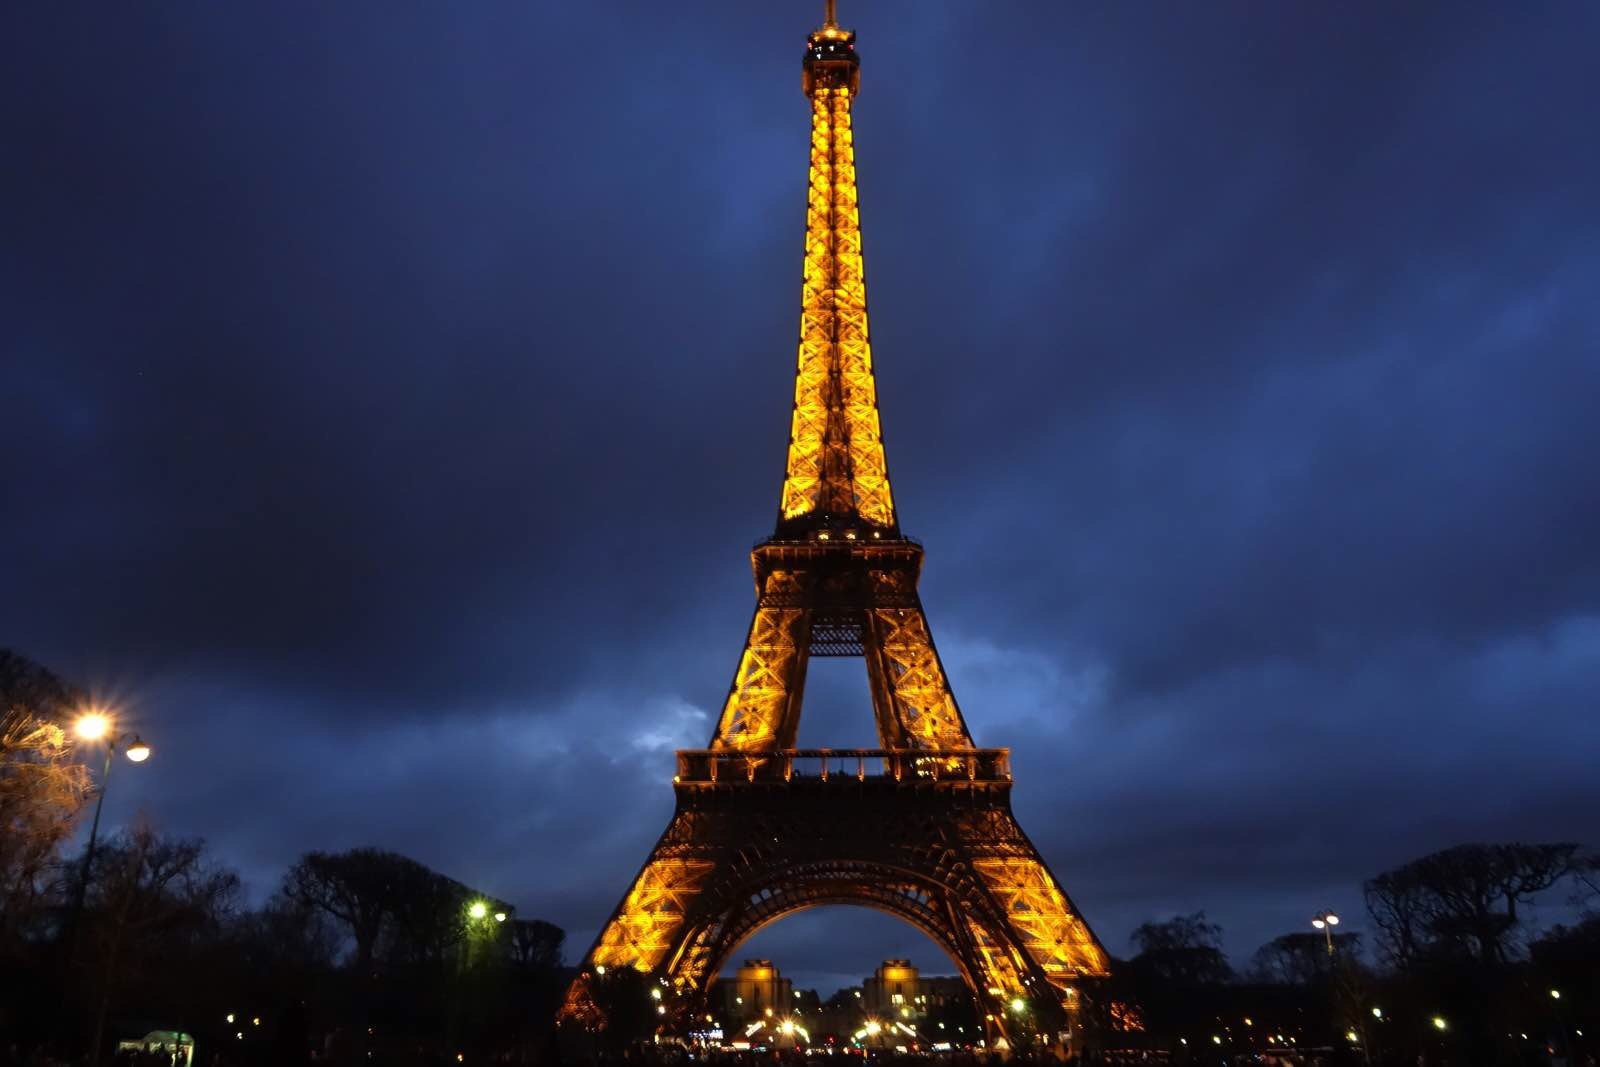 地标合影攻略 | 和埃菲尔铁塔花式同框 巴黎在很多人眼里都是文艺浪